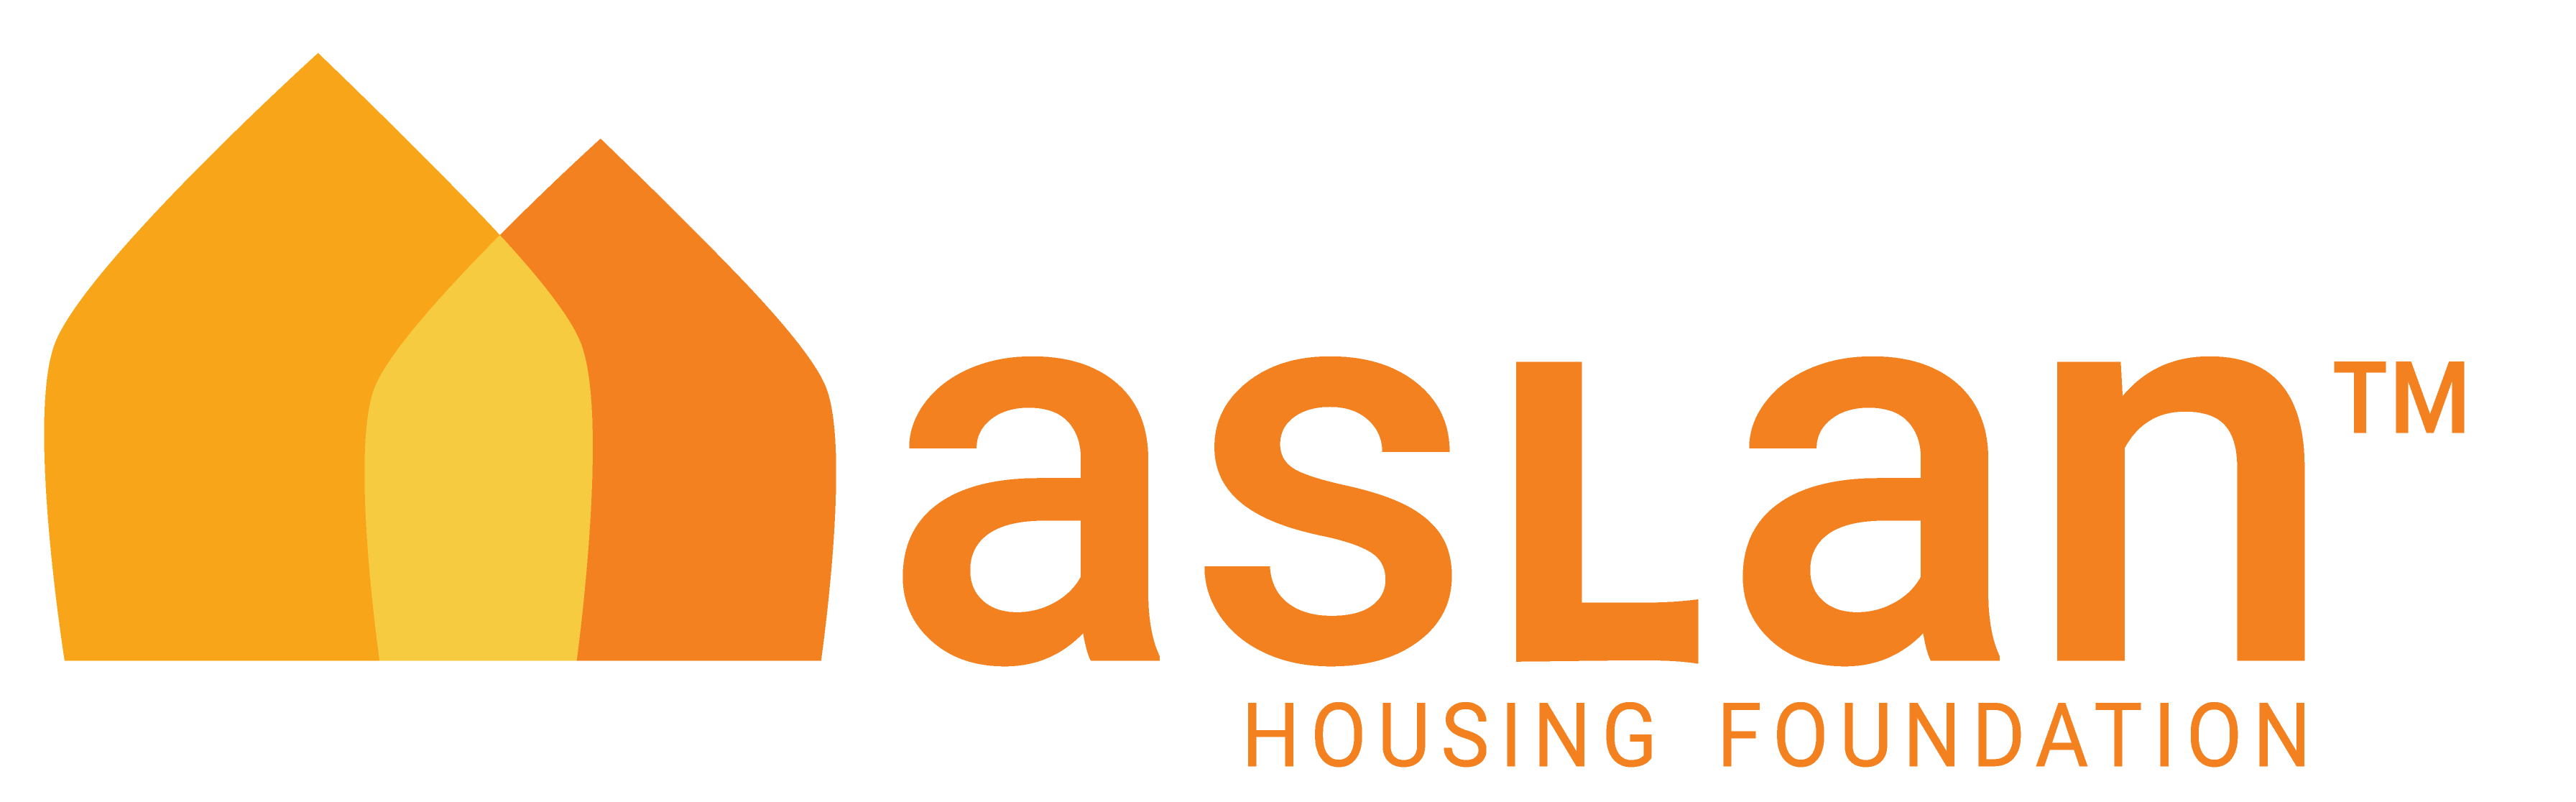 Aslan Housing Foundation™